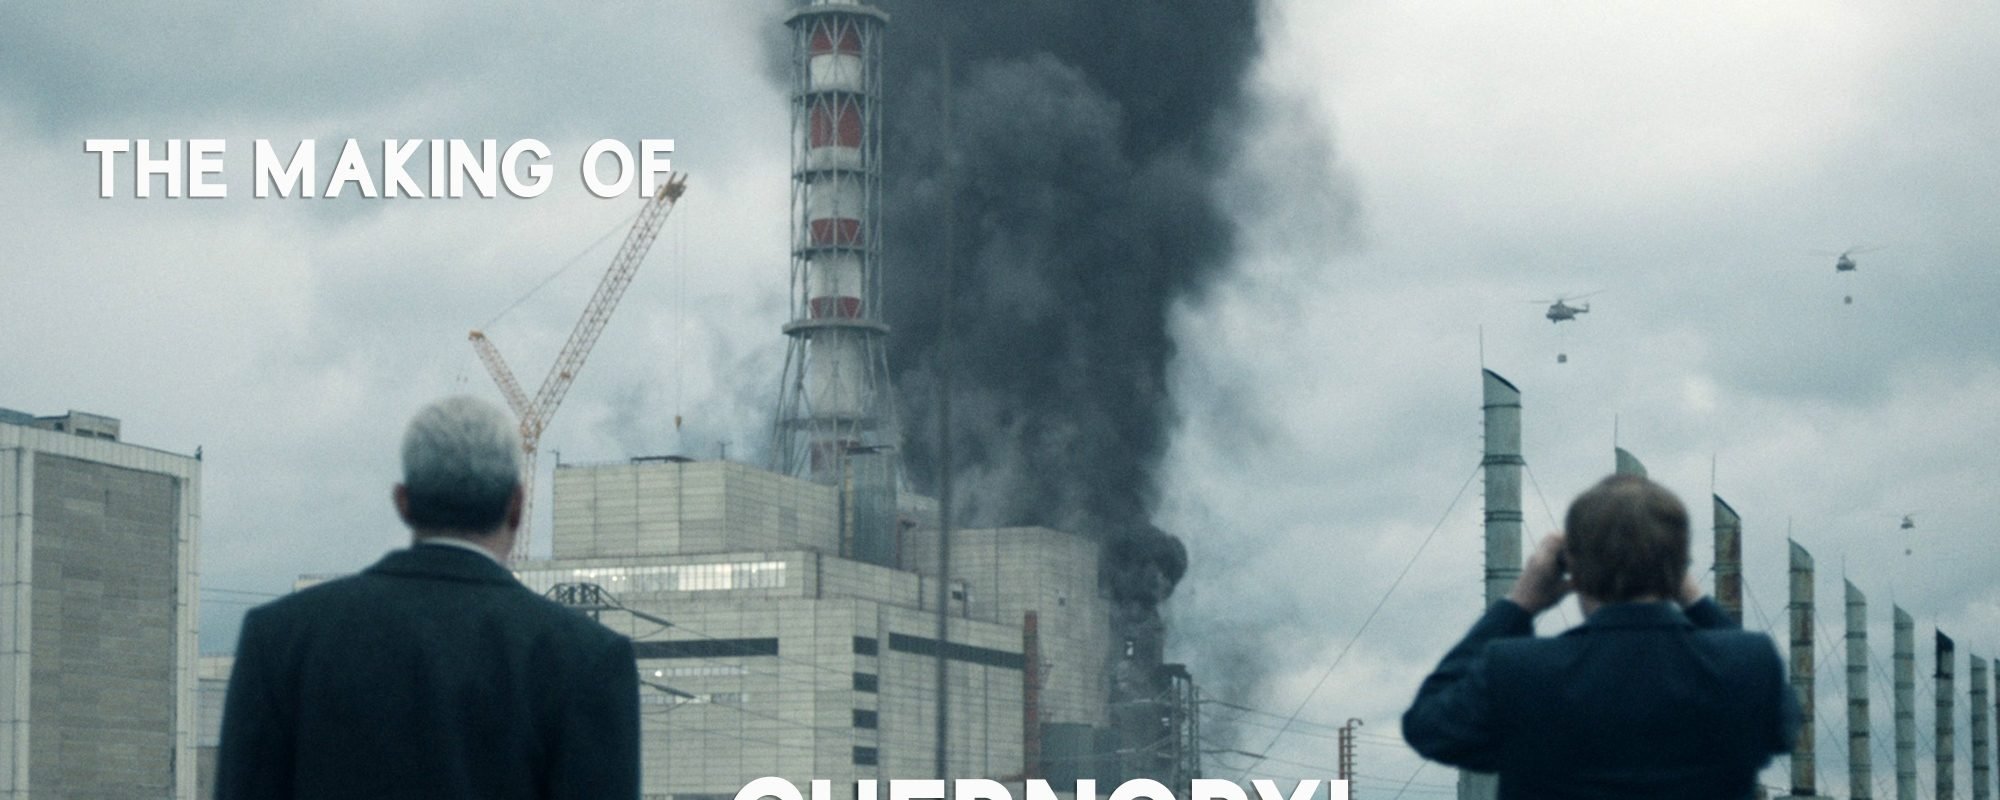 Chernobyl: Jakob Ihre, FSF - Responsibility to Mankind